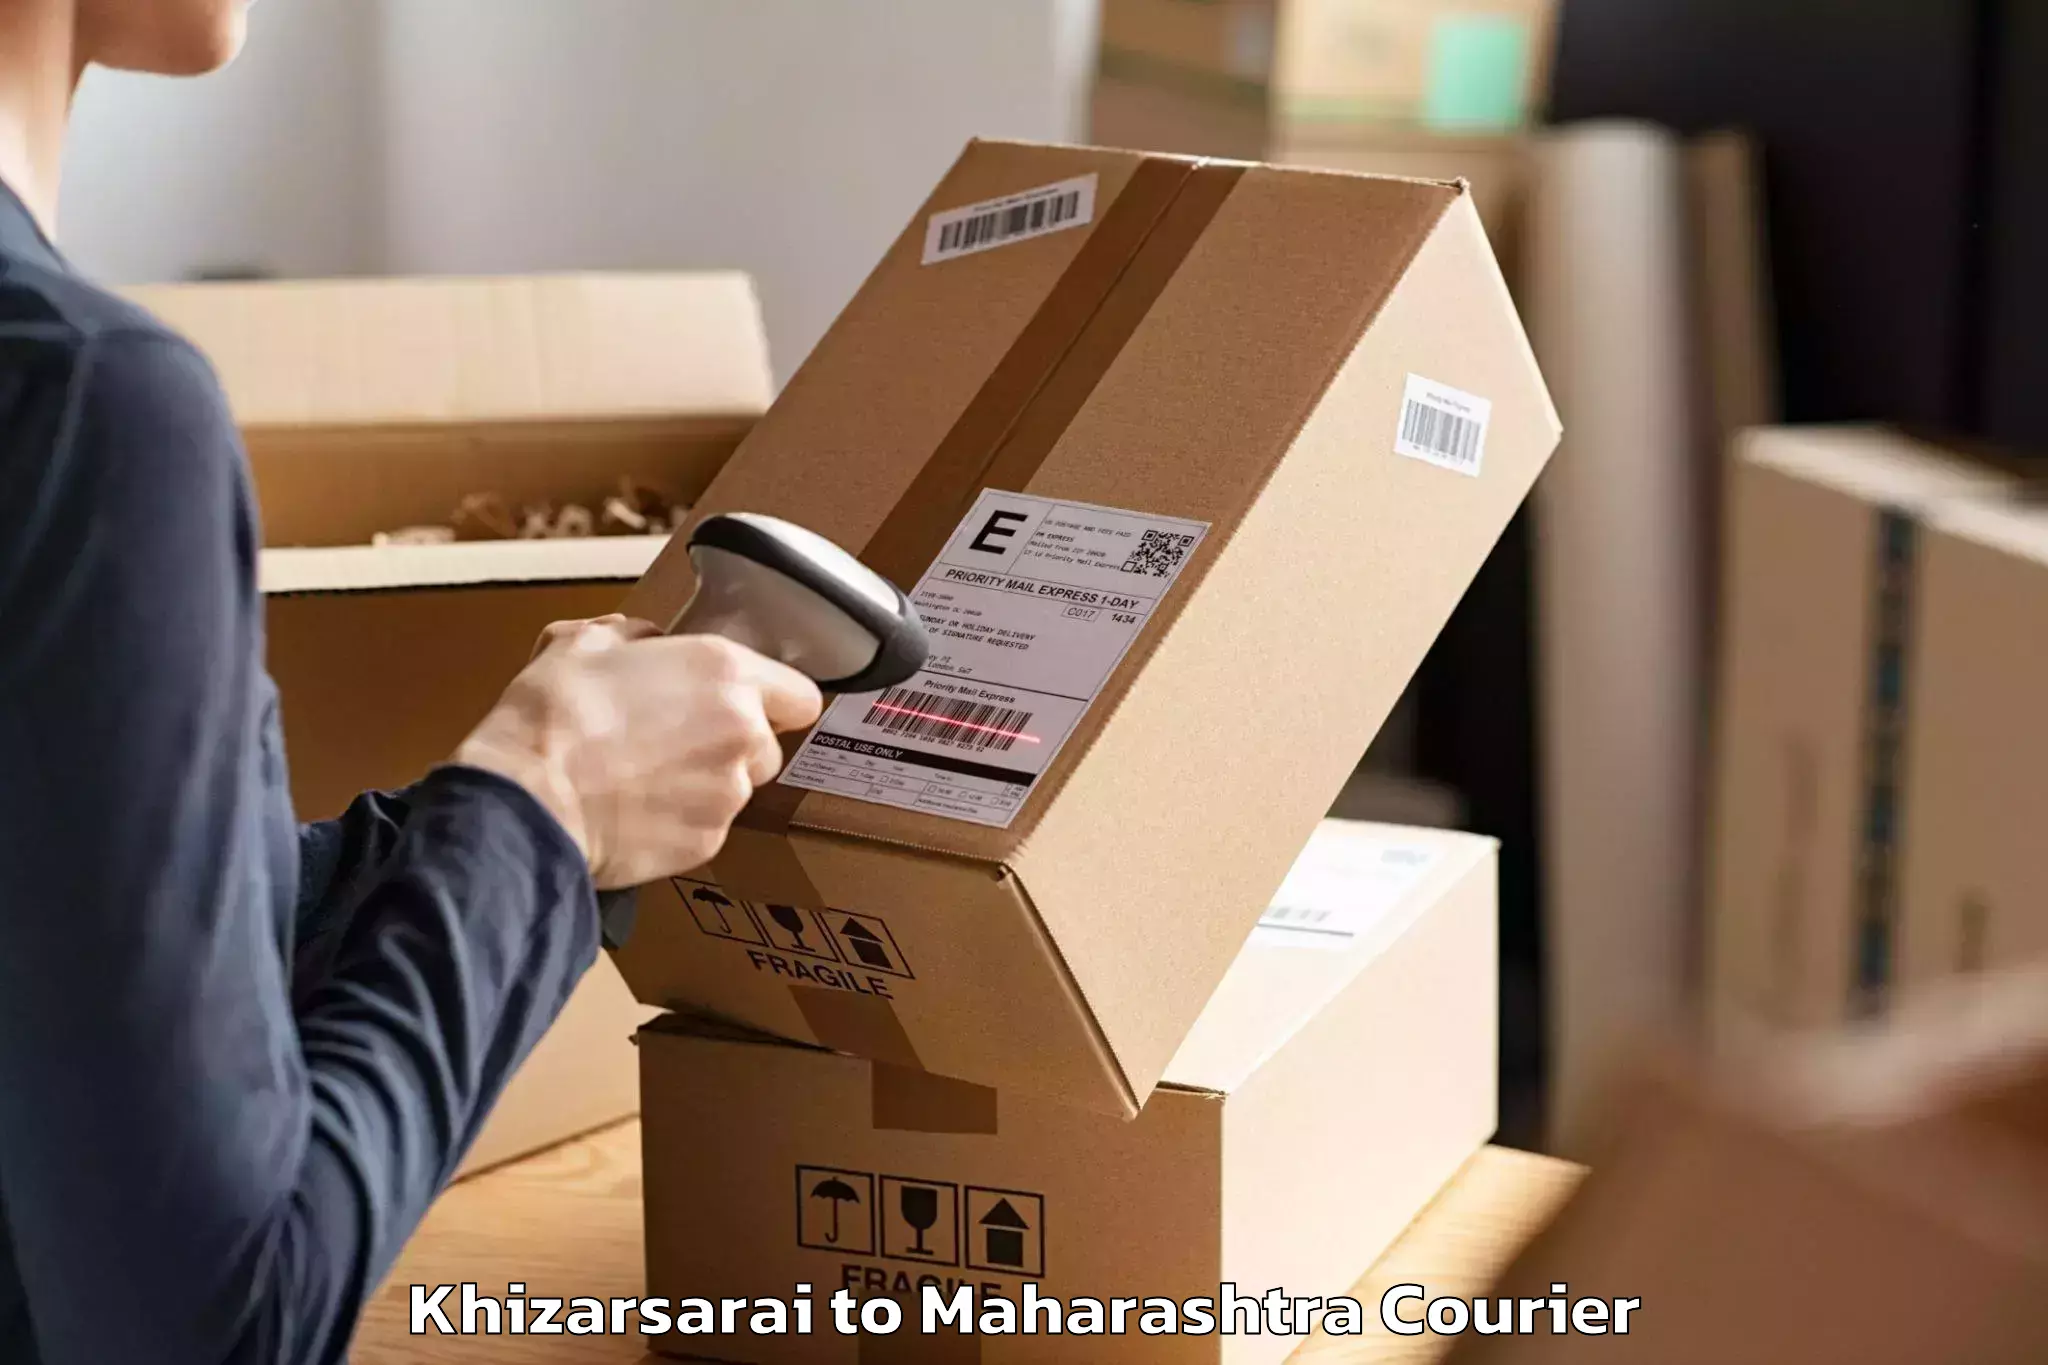 Efficient moving company Khizarsarai to Mumbai Port